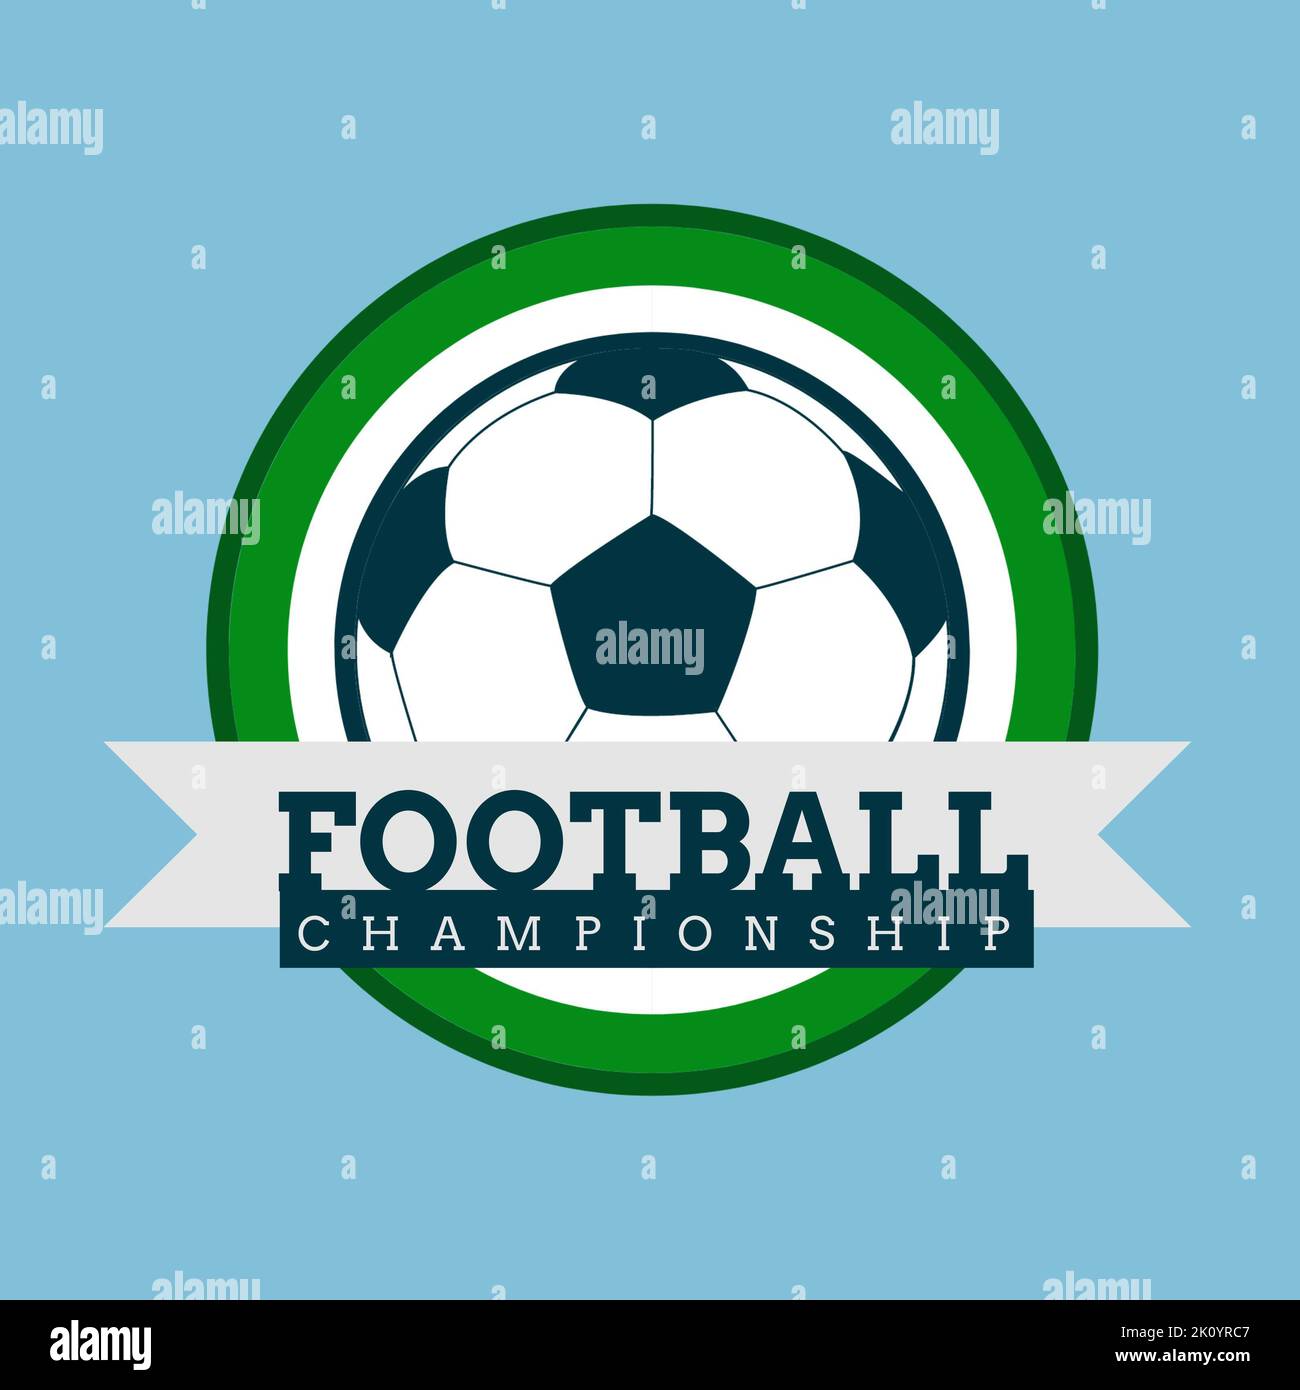 Composizione del logo con testo del campionato di calcio su sfondo blu Foto Stock